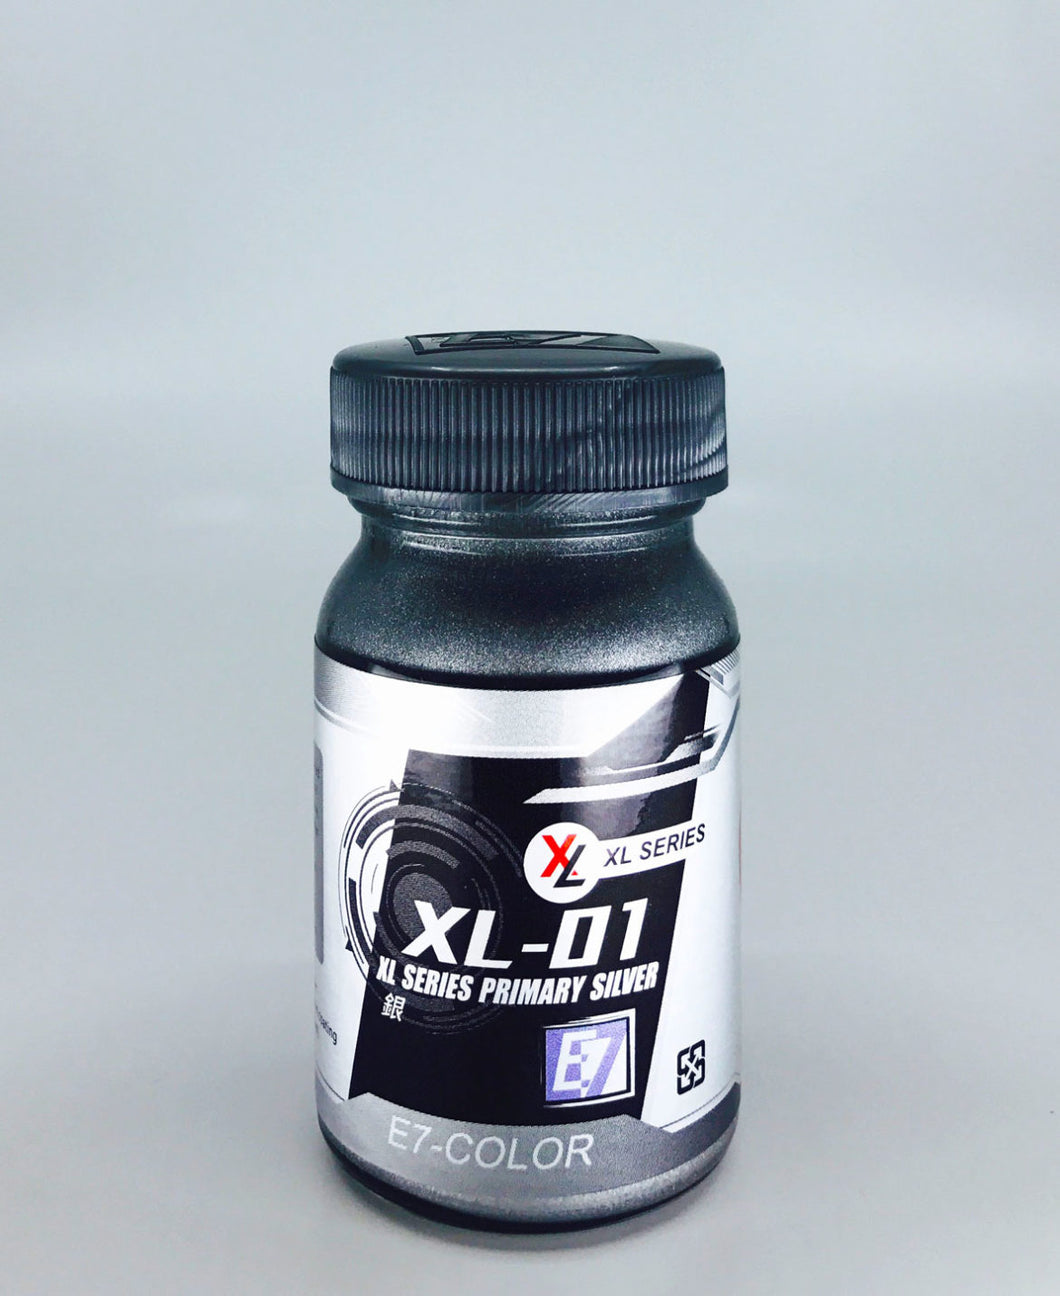 E7 XL-01 PRIMARY SILVER 50ML